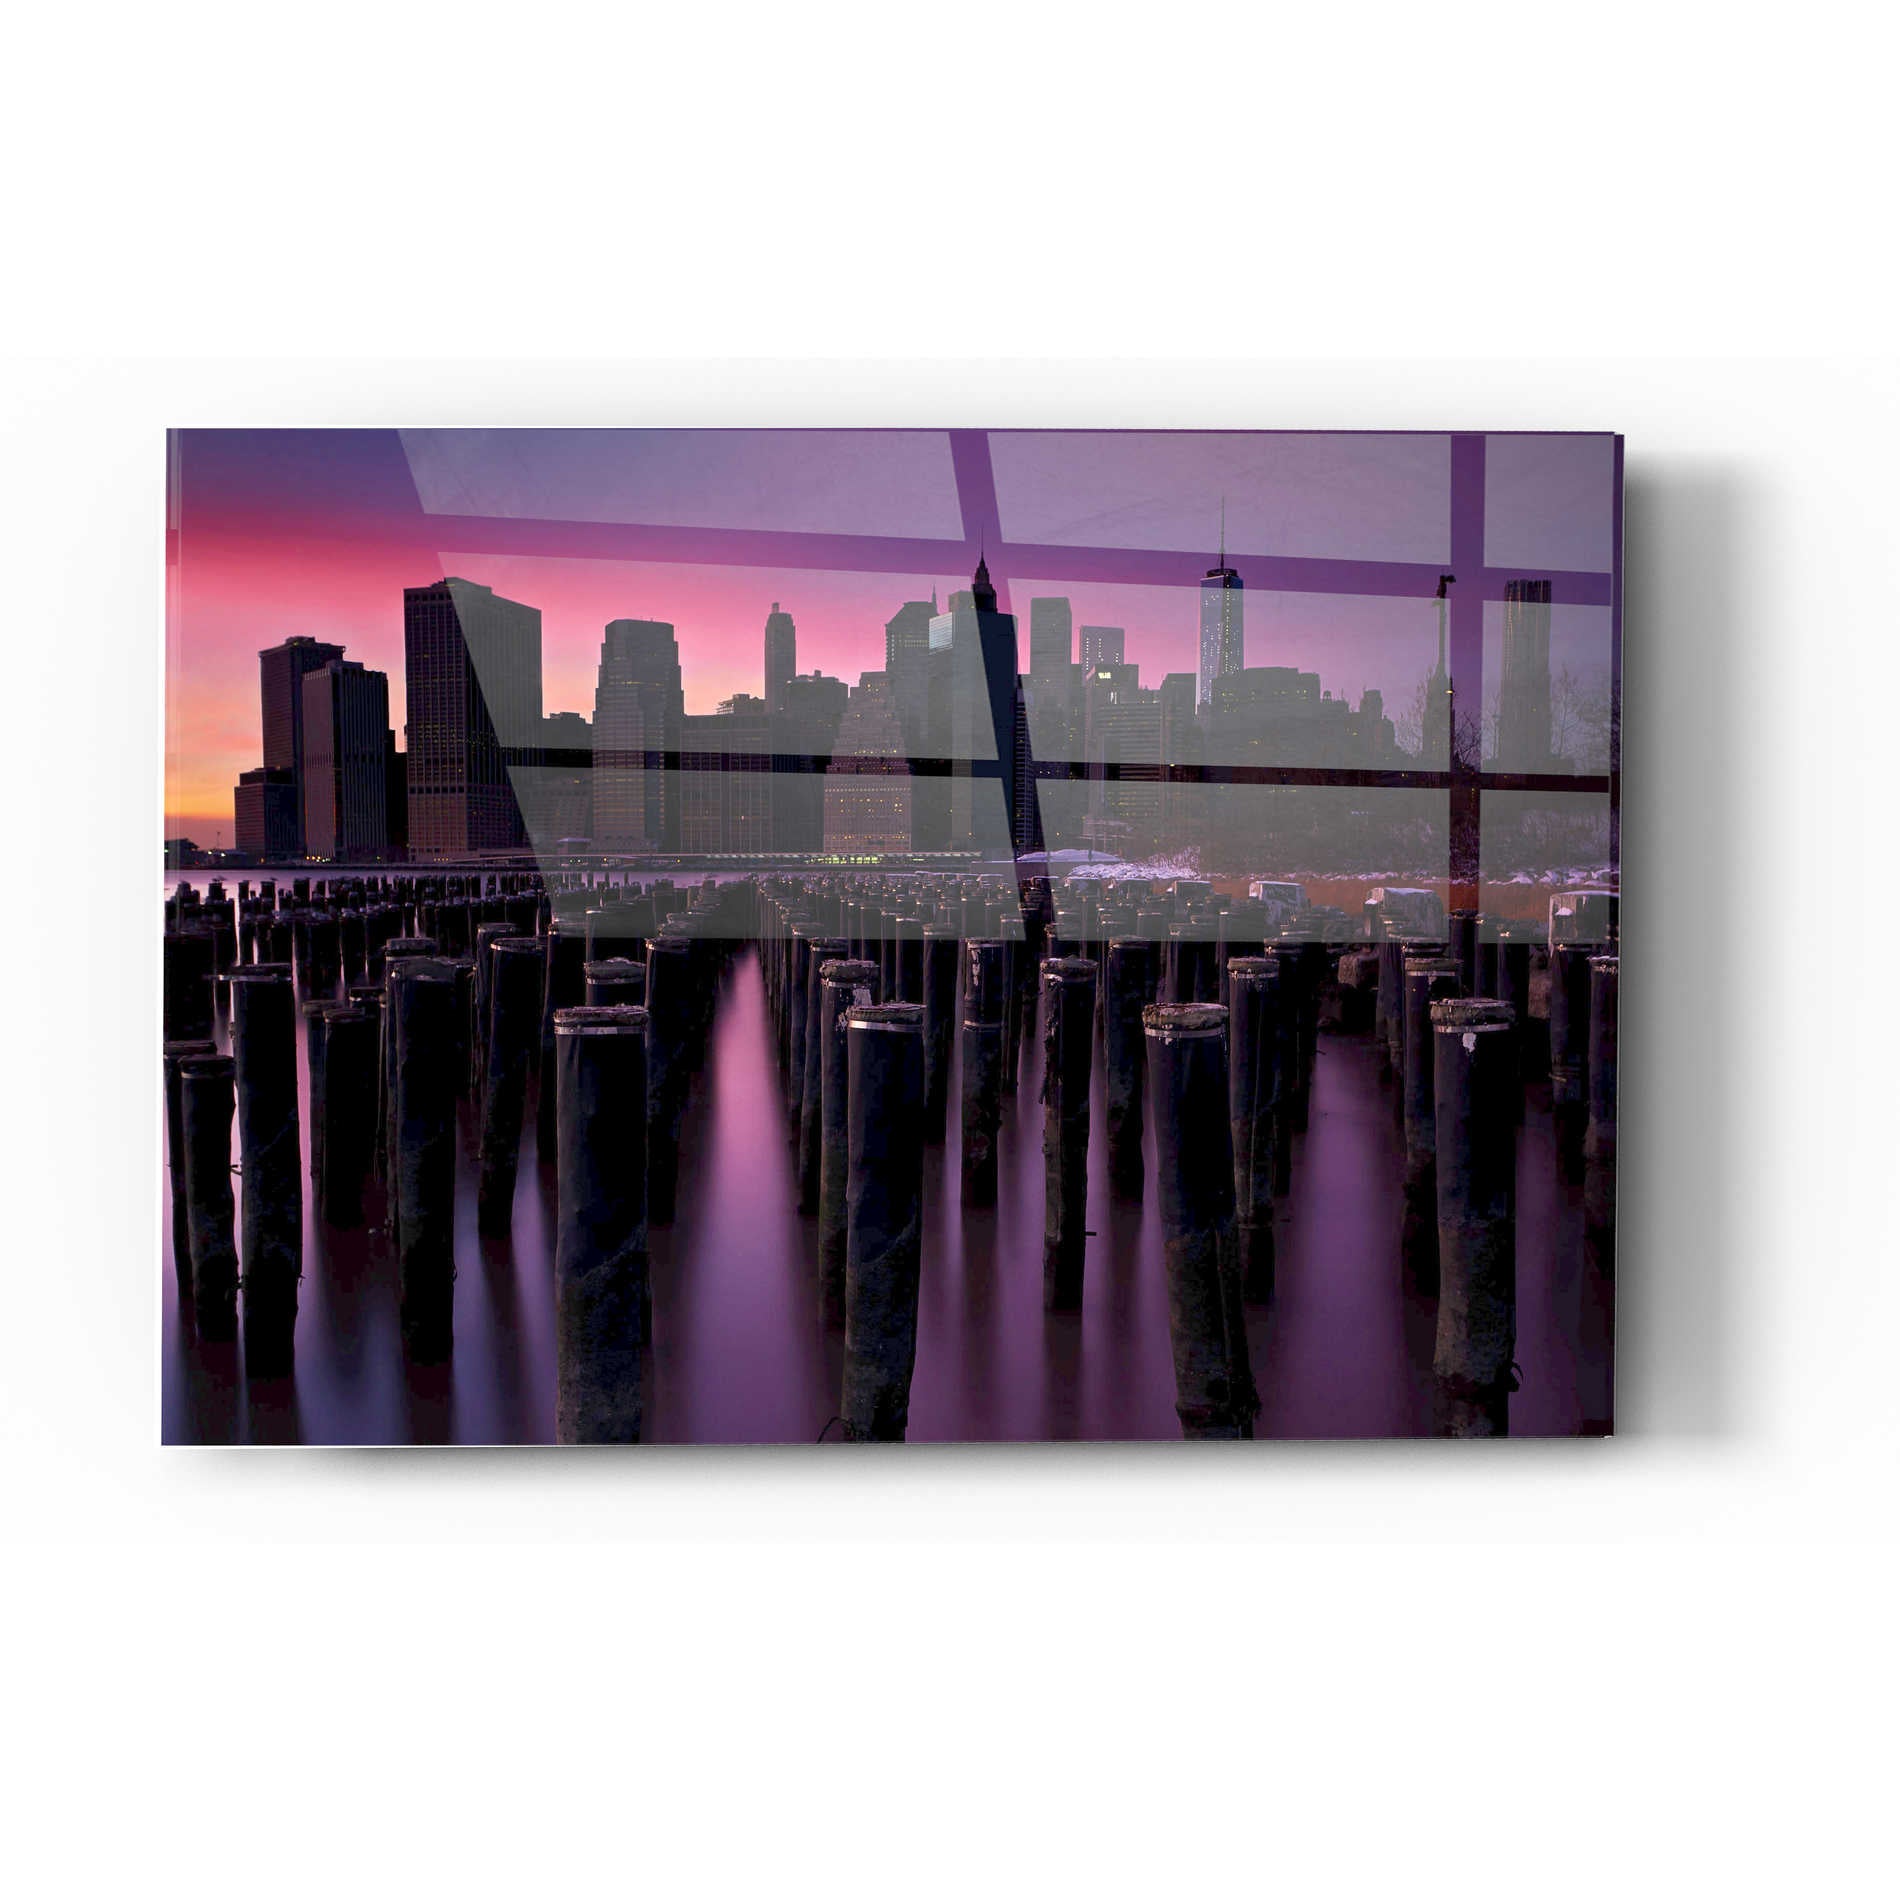 Epic Art 'Manhattan Glow' by Katherine Gendreau, Acrylic Glass Wall Art,16x24